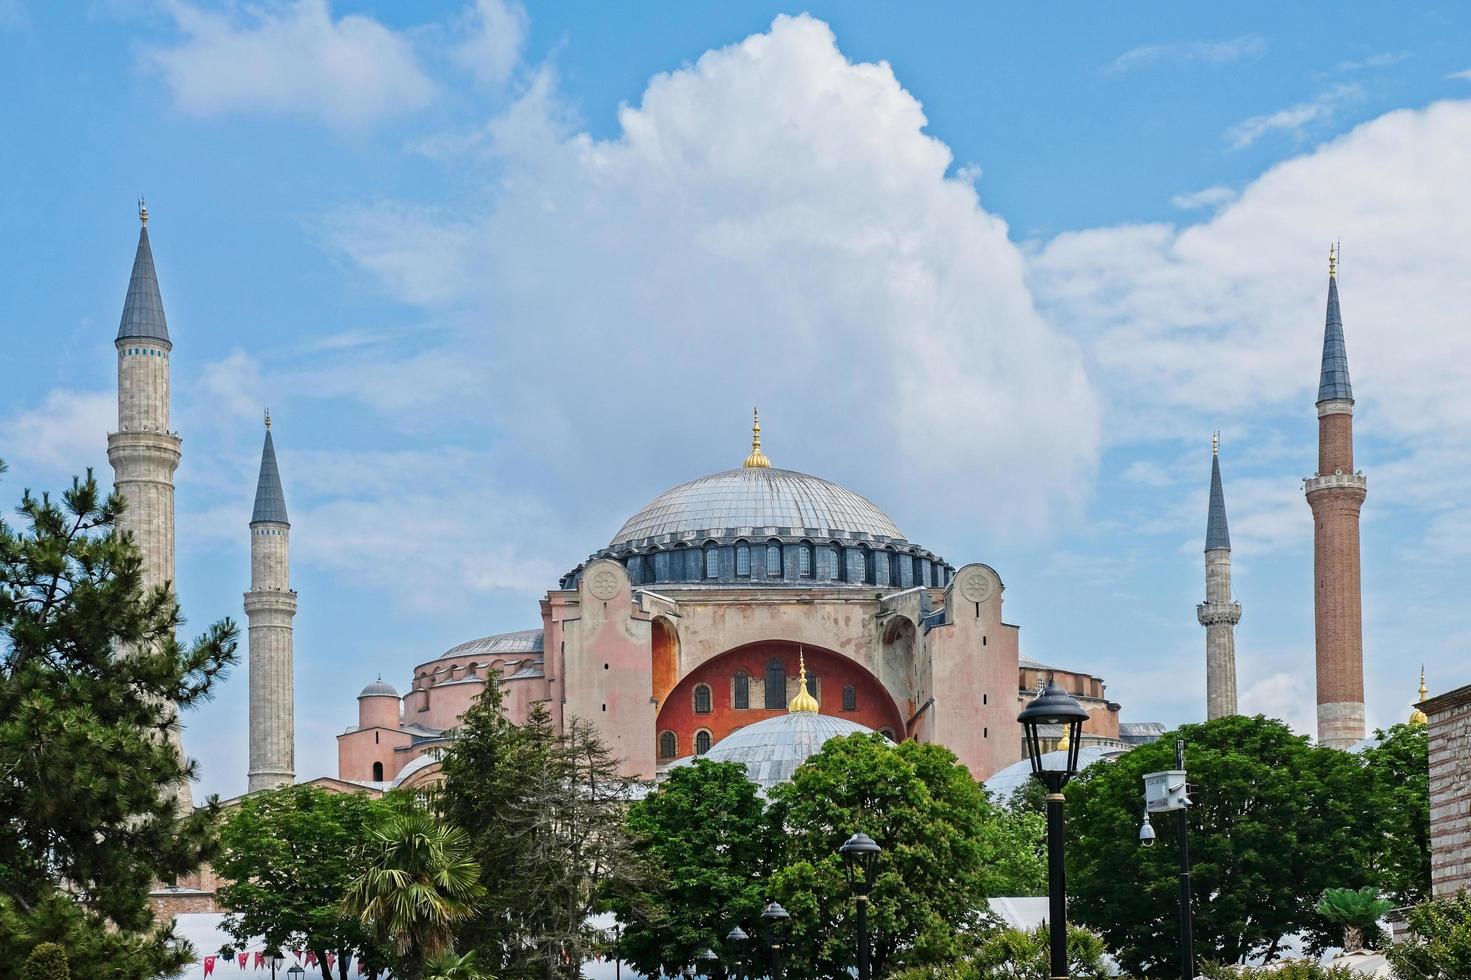 istanbul, Turchia - 26 maggio. Vista esterna del museo di hagia sophia a istanbul, in Turchia, il 26 maggio 2018 foto